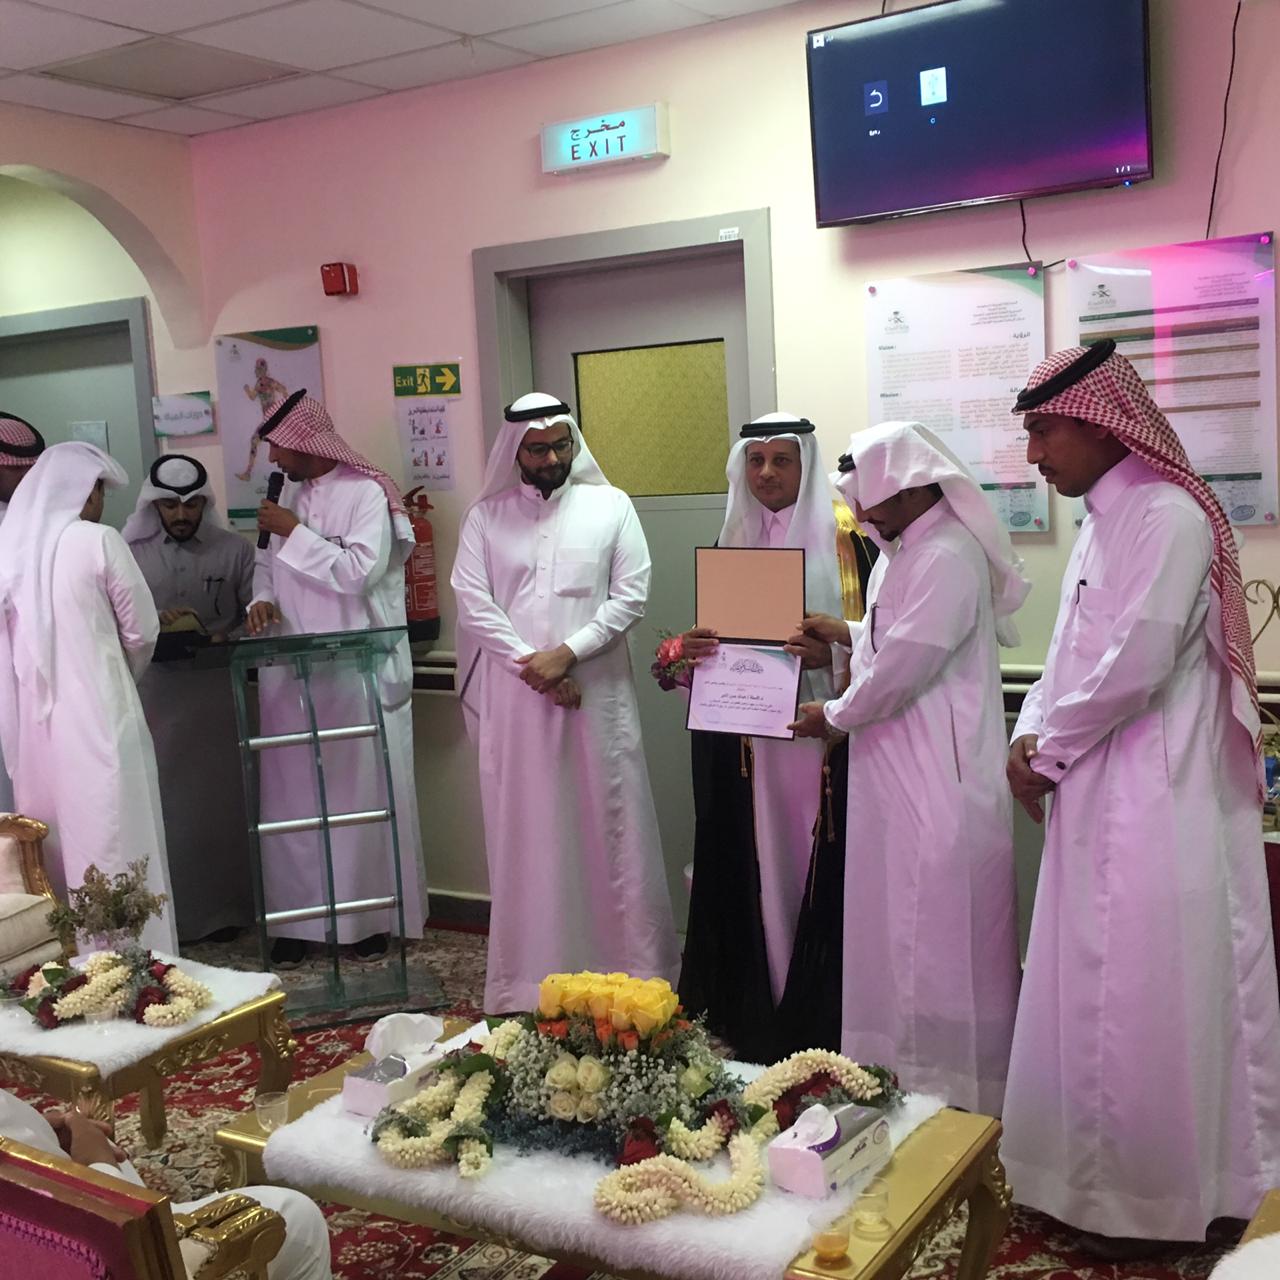 اعتماد مركز الرعاية الأولية بالغريب من قبل المركز السعودي لإعتماد المنشئات الصحية    